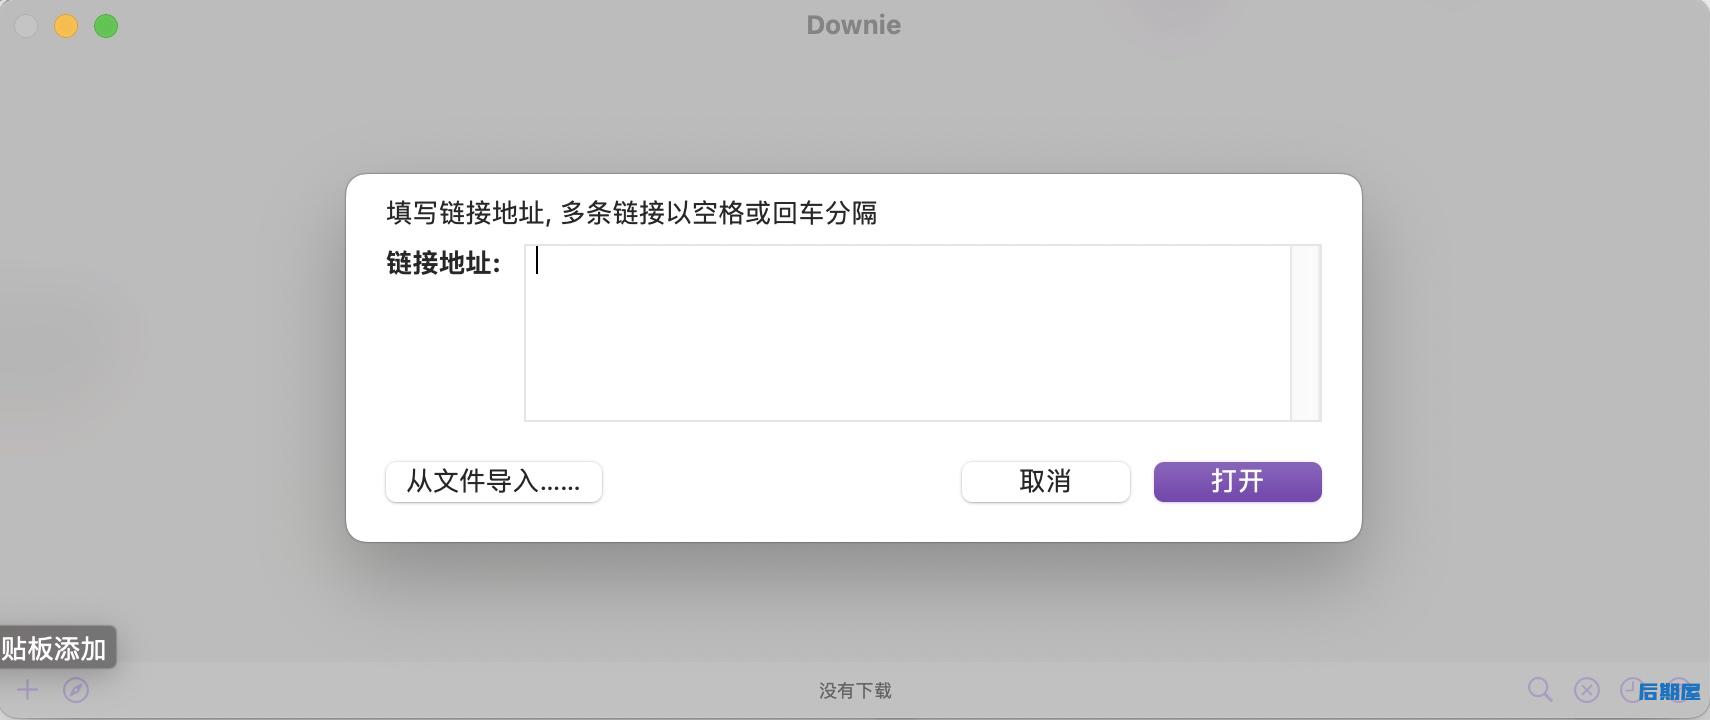 Downie 4 for Mac 视频下载工具(附安装教程)兼容m1 V4.4.7 最新一键安装版